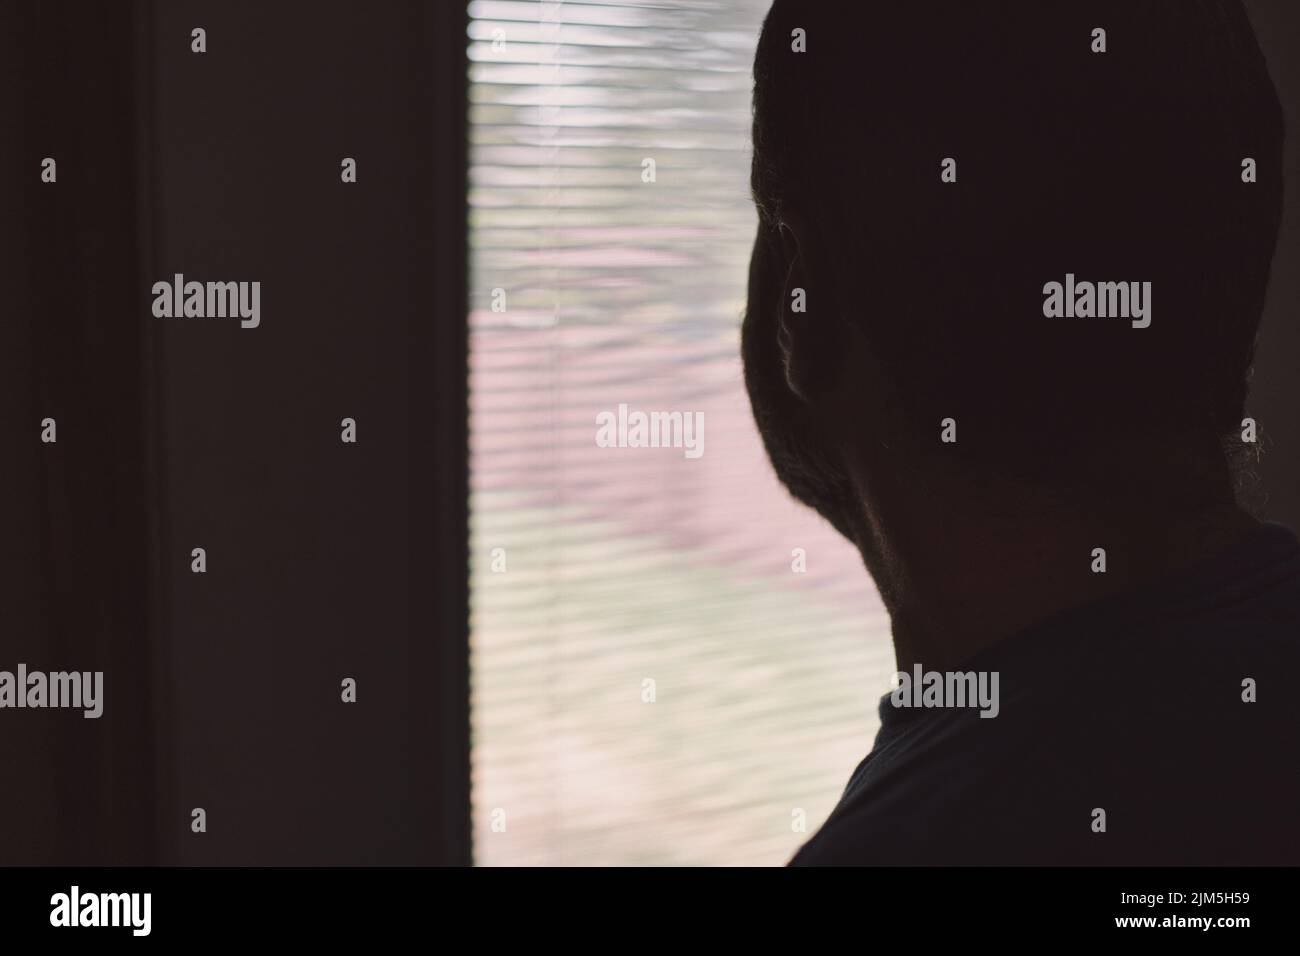 Saisonale affektive Störung - TRAURIG - depressiver Mann, der ziellos aus dem Fenster schaut - psychische Gesundheit Stockfoto